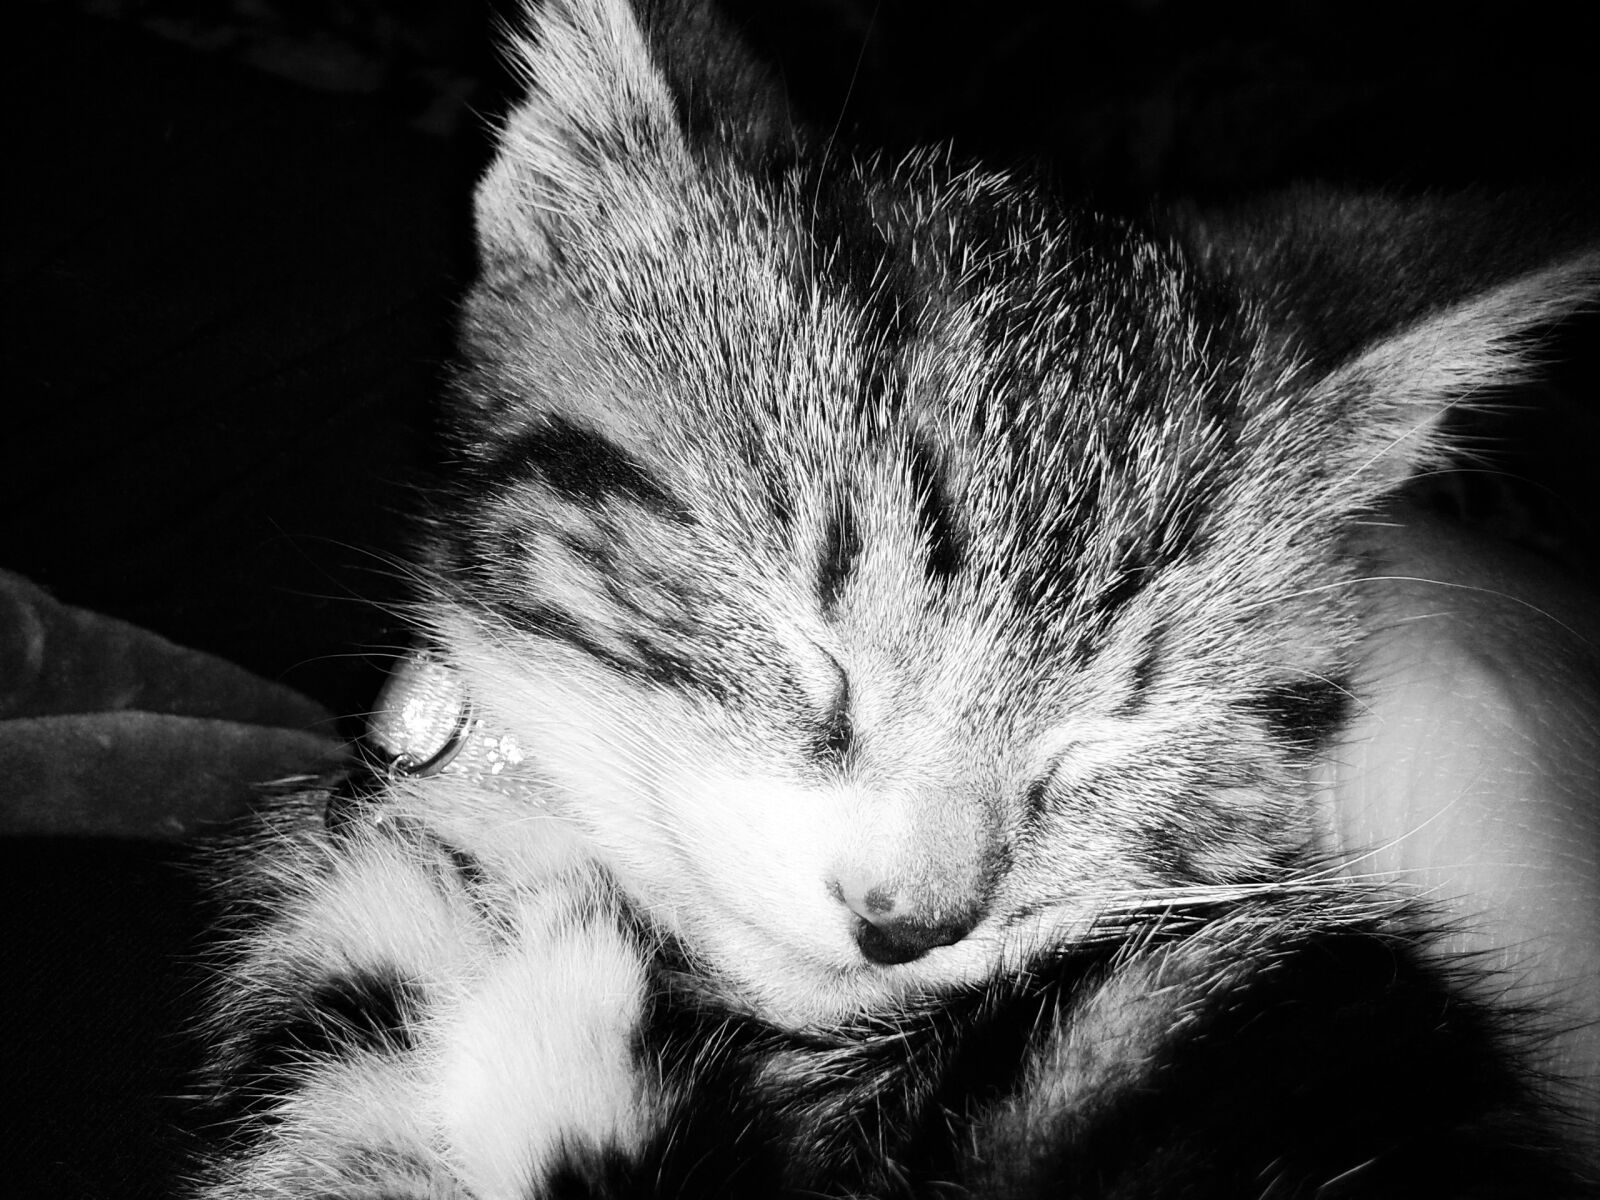 Samsung Galaxy S3 Mini sample photo. Kitten, feline, animals photography